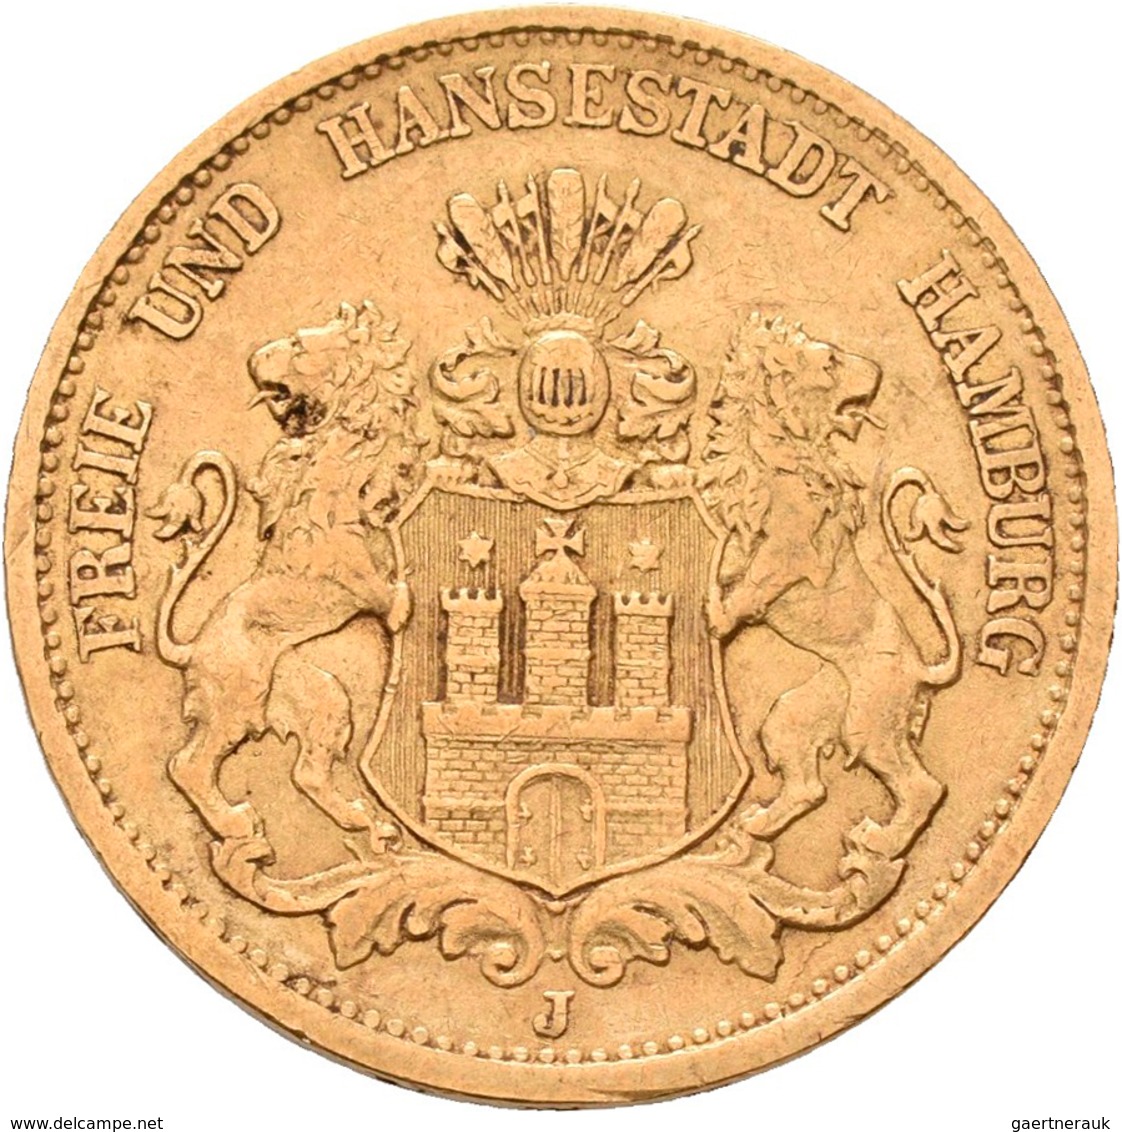 Hamburg: Freie Und Hansestadt: 20 Mark 1877 J, Jaeger 210. 7,92 G, 900/1000 Gold, Sehr Schön. - Monete D'oro